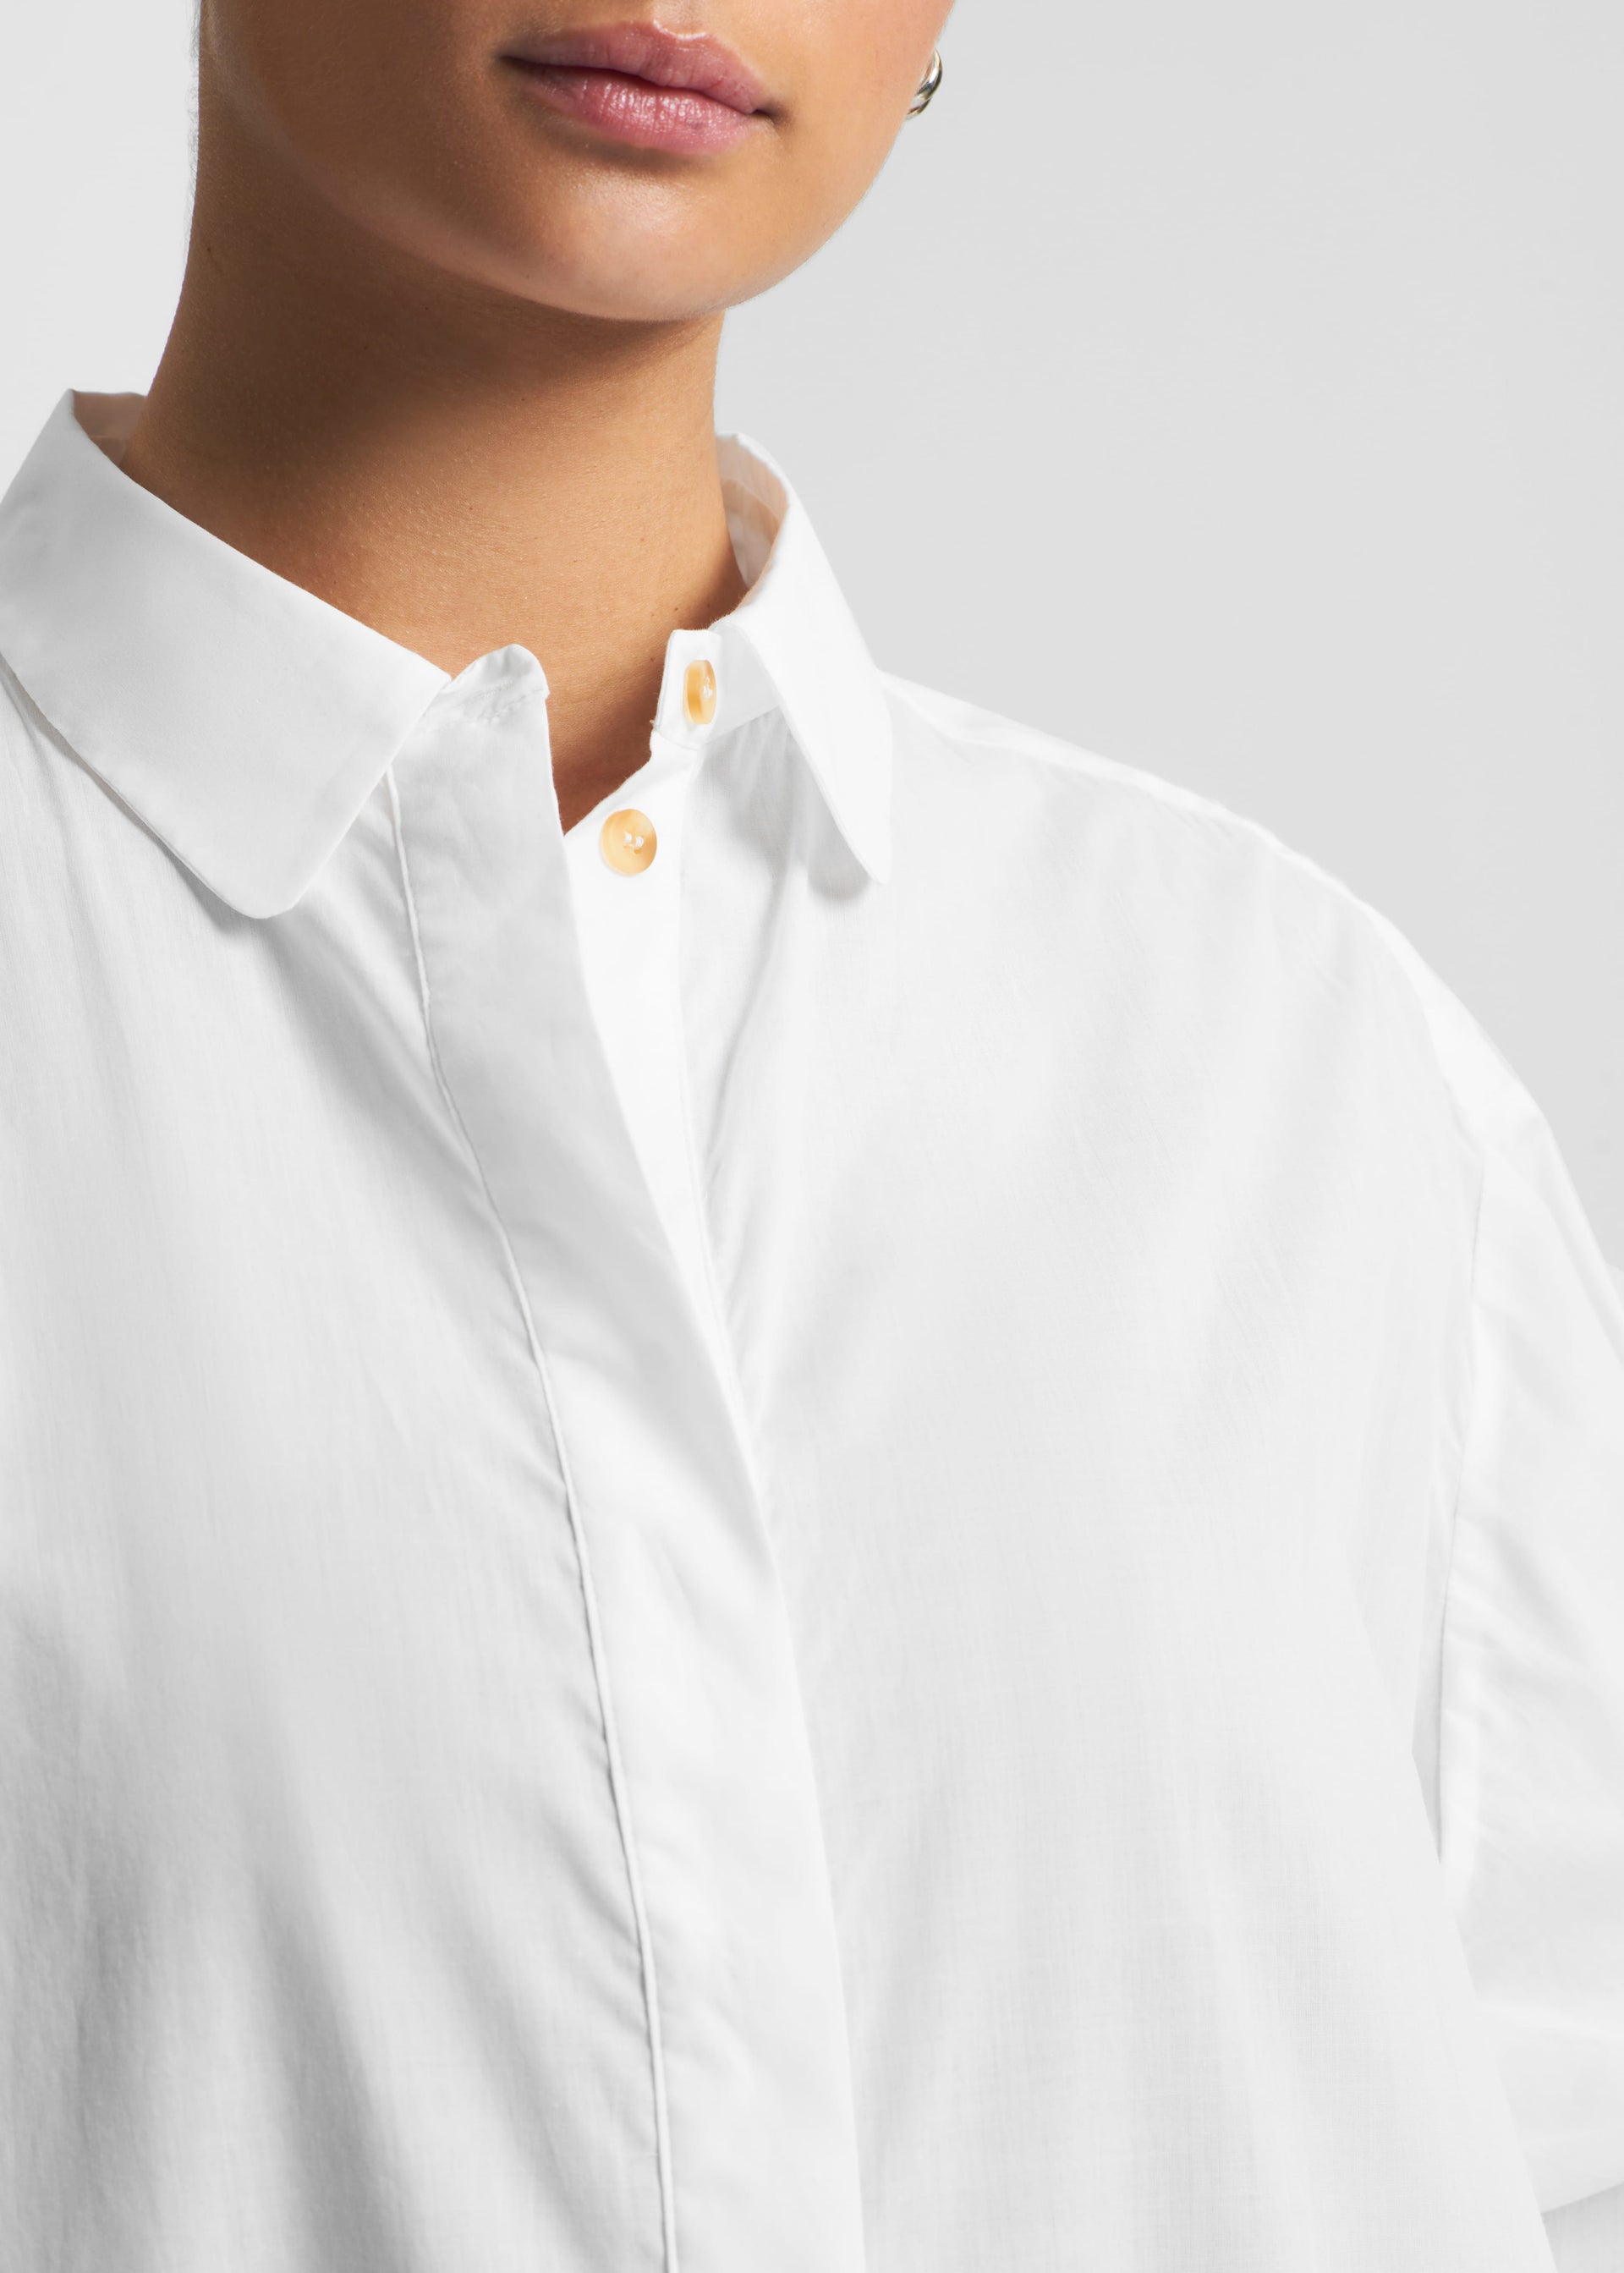 Allegra White Cotton Shirt Dress